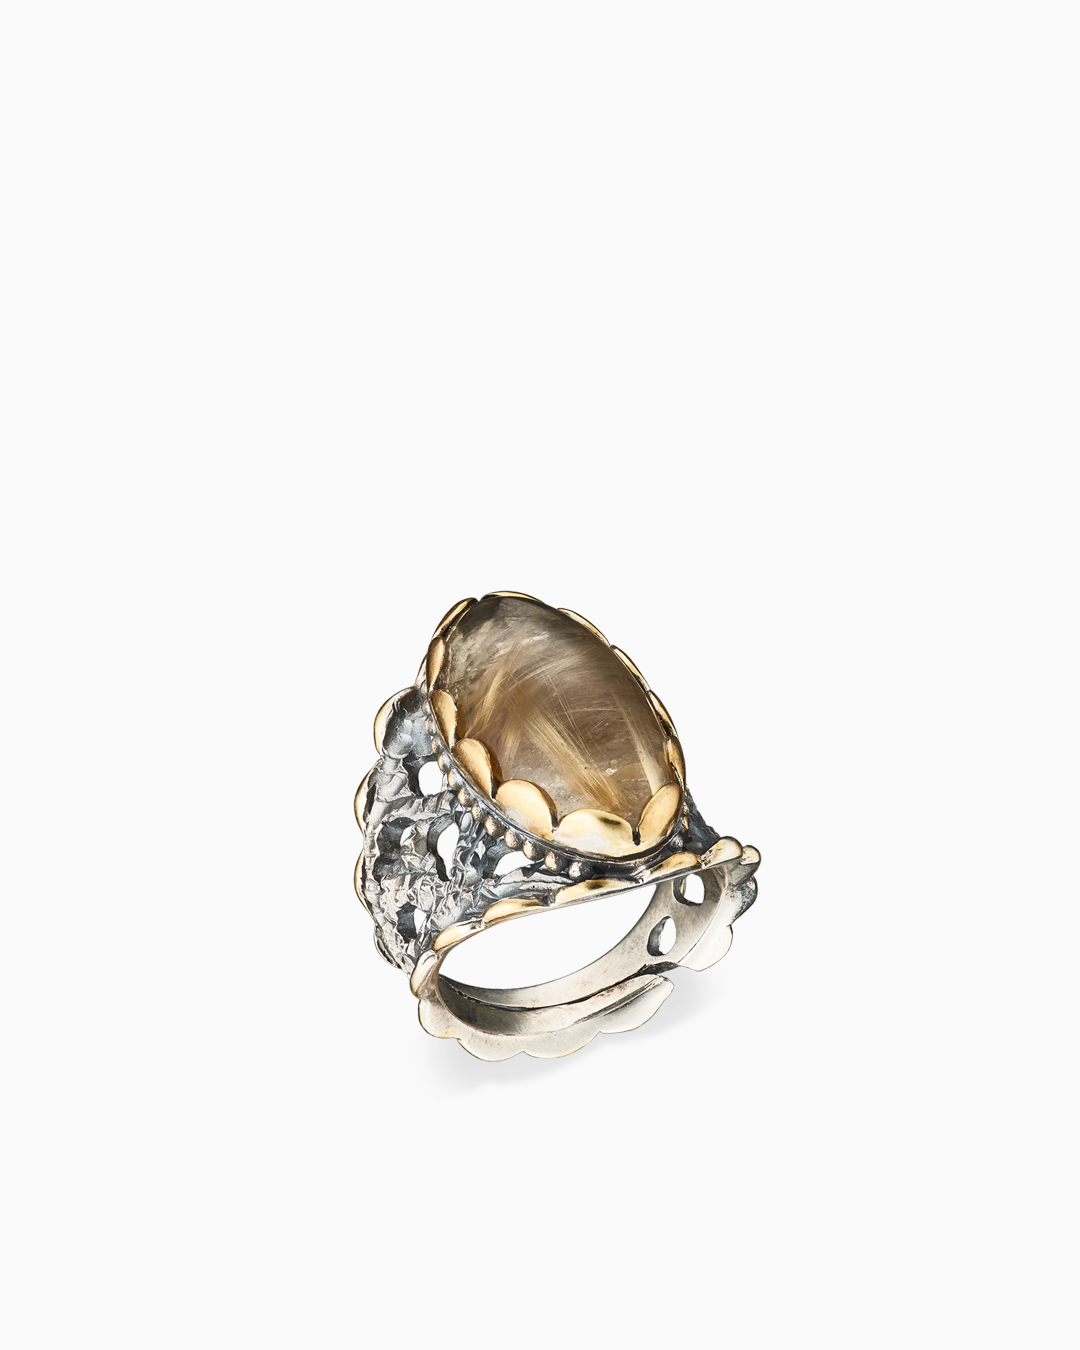 Крупное серебряное кольцо с кварцем волосатиком, позолотой и массивной ажурной шинкой - фото 1